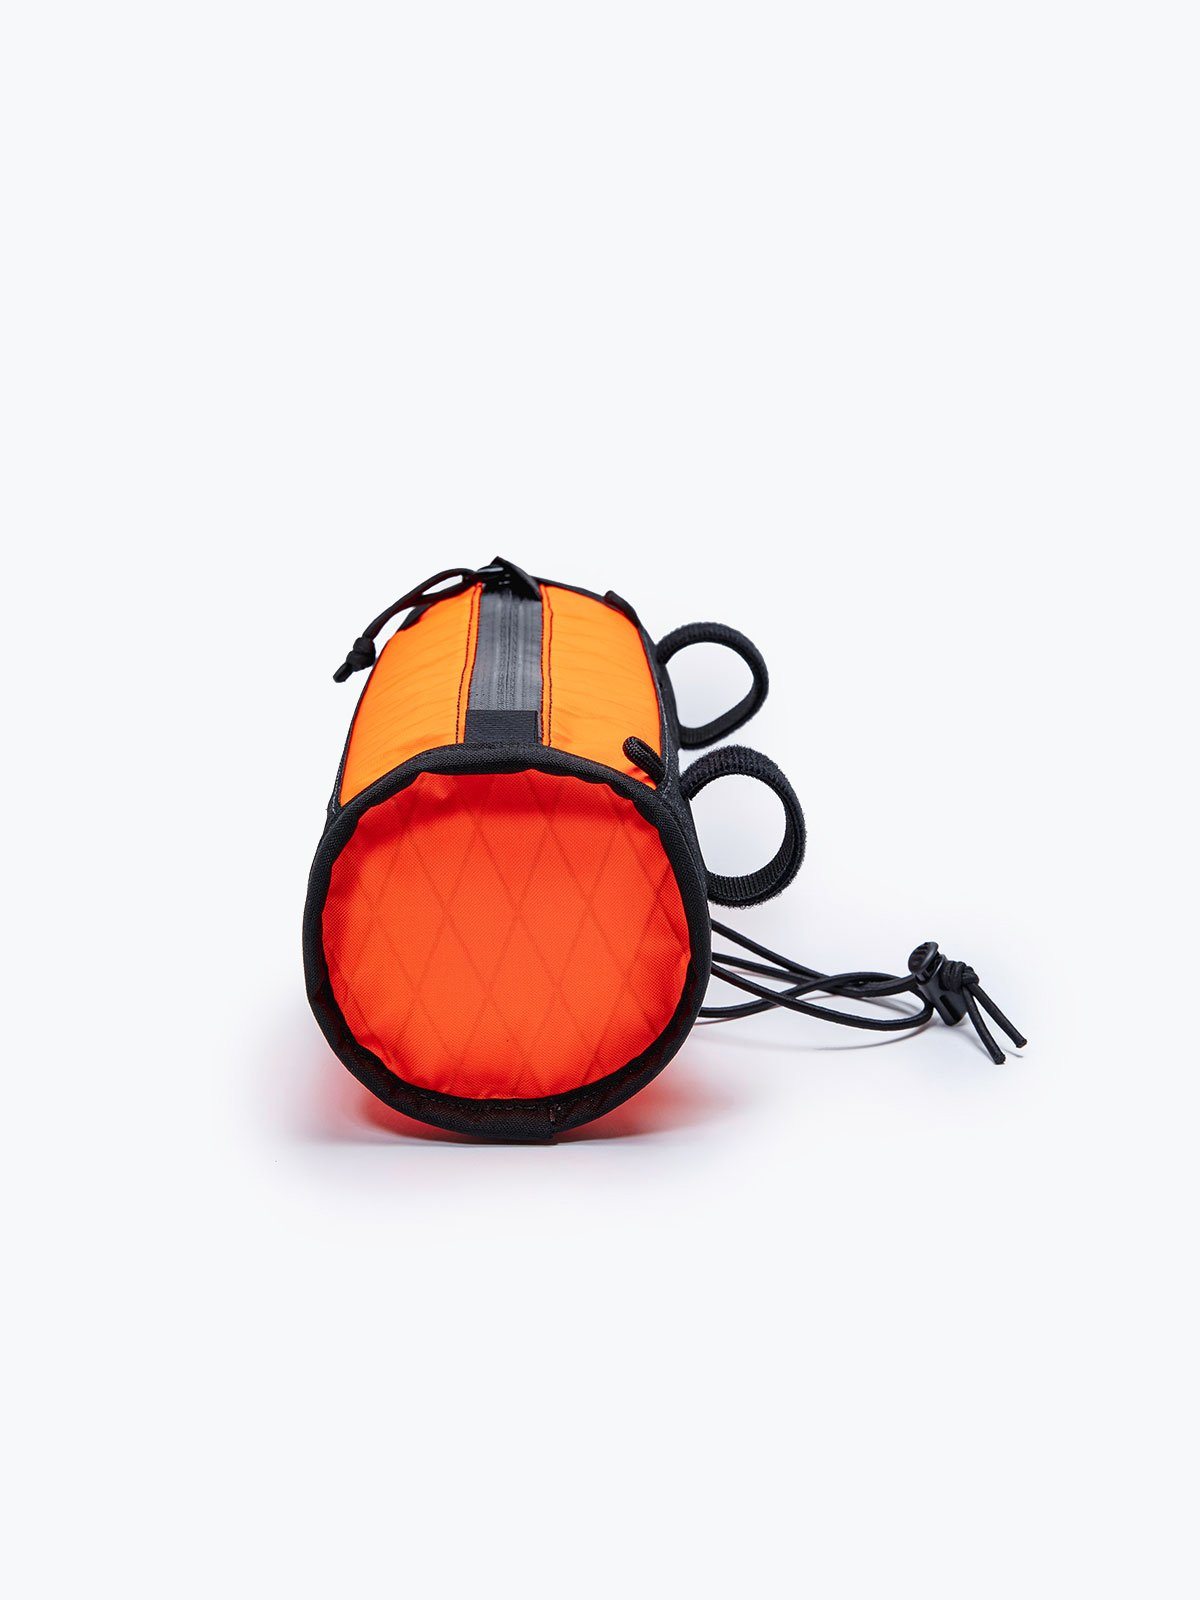 Toro Handlebar Bag von Mission Workshop - Wetterfeste Taschen & Technische Bekleidung - San Francisco & Los Angeles - Für die Ewigkeit gebaut - Garantiert